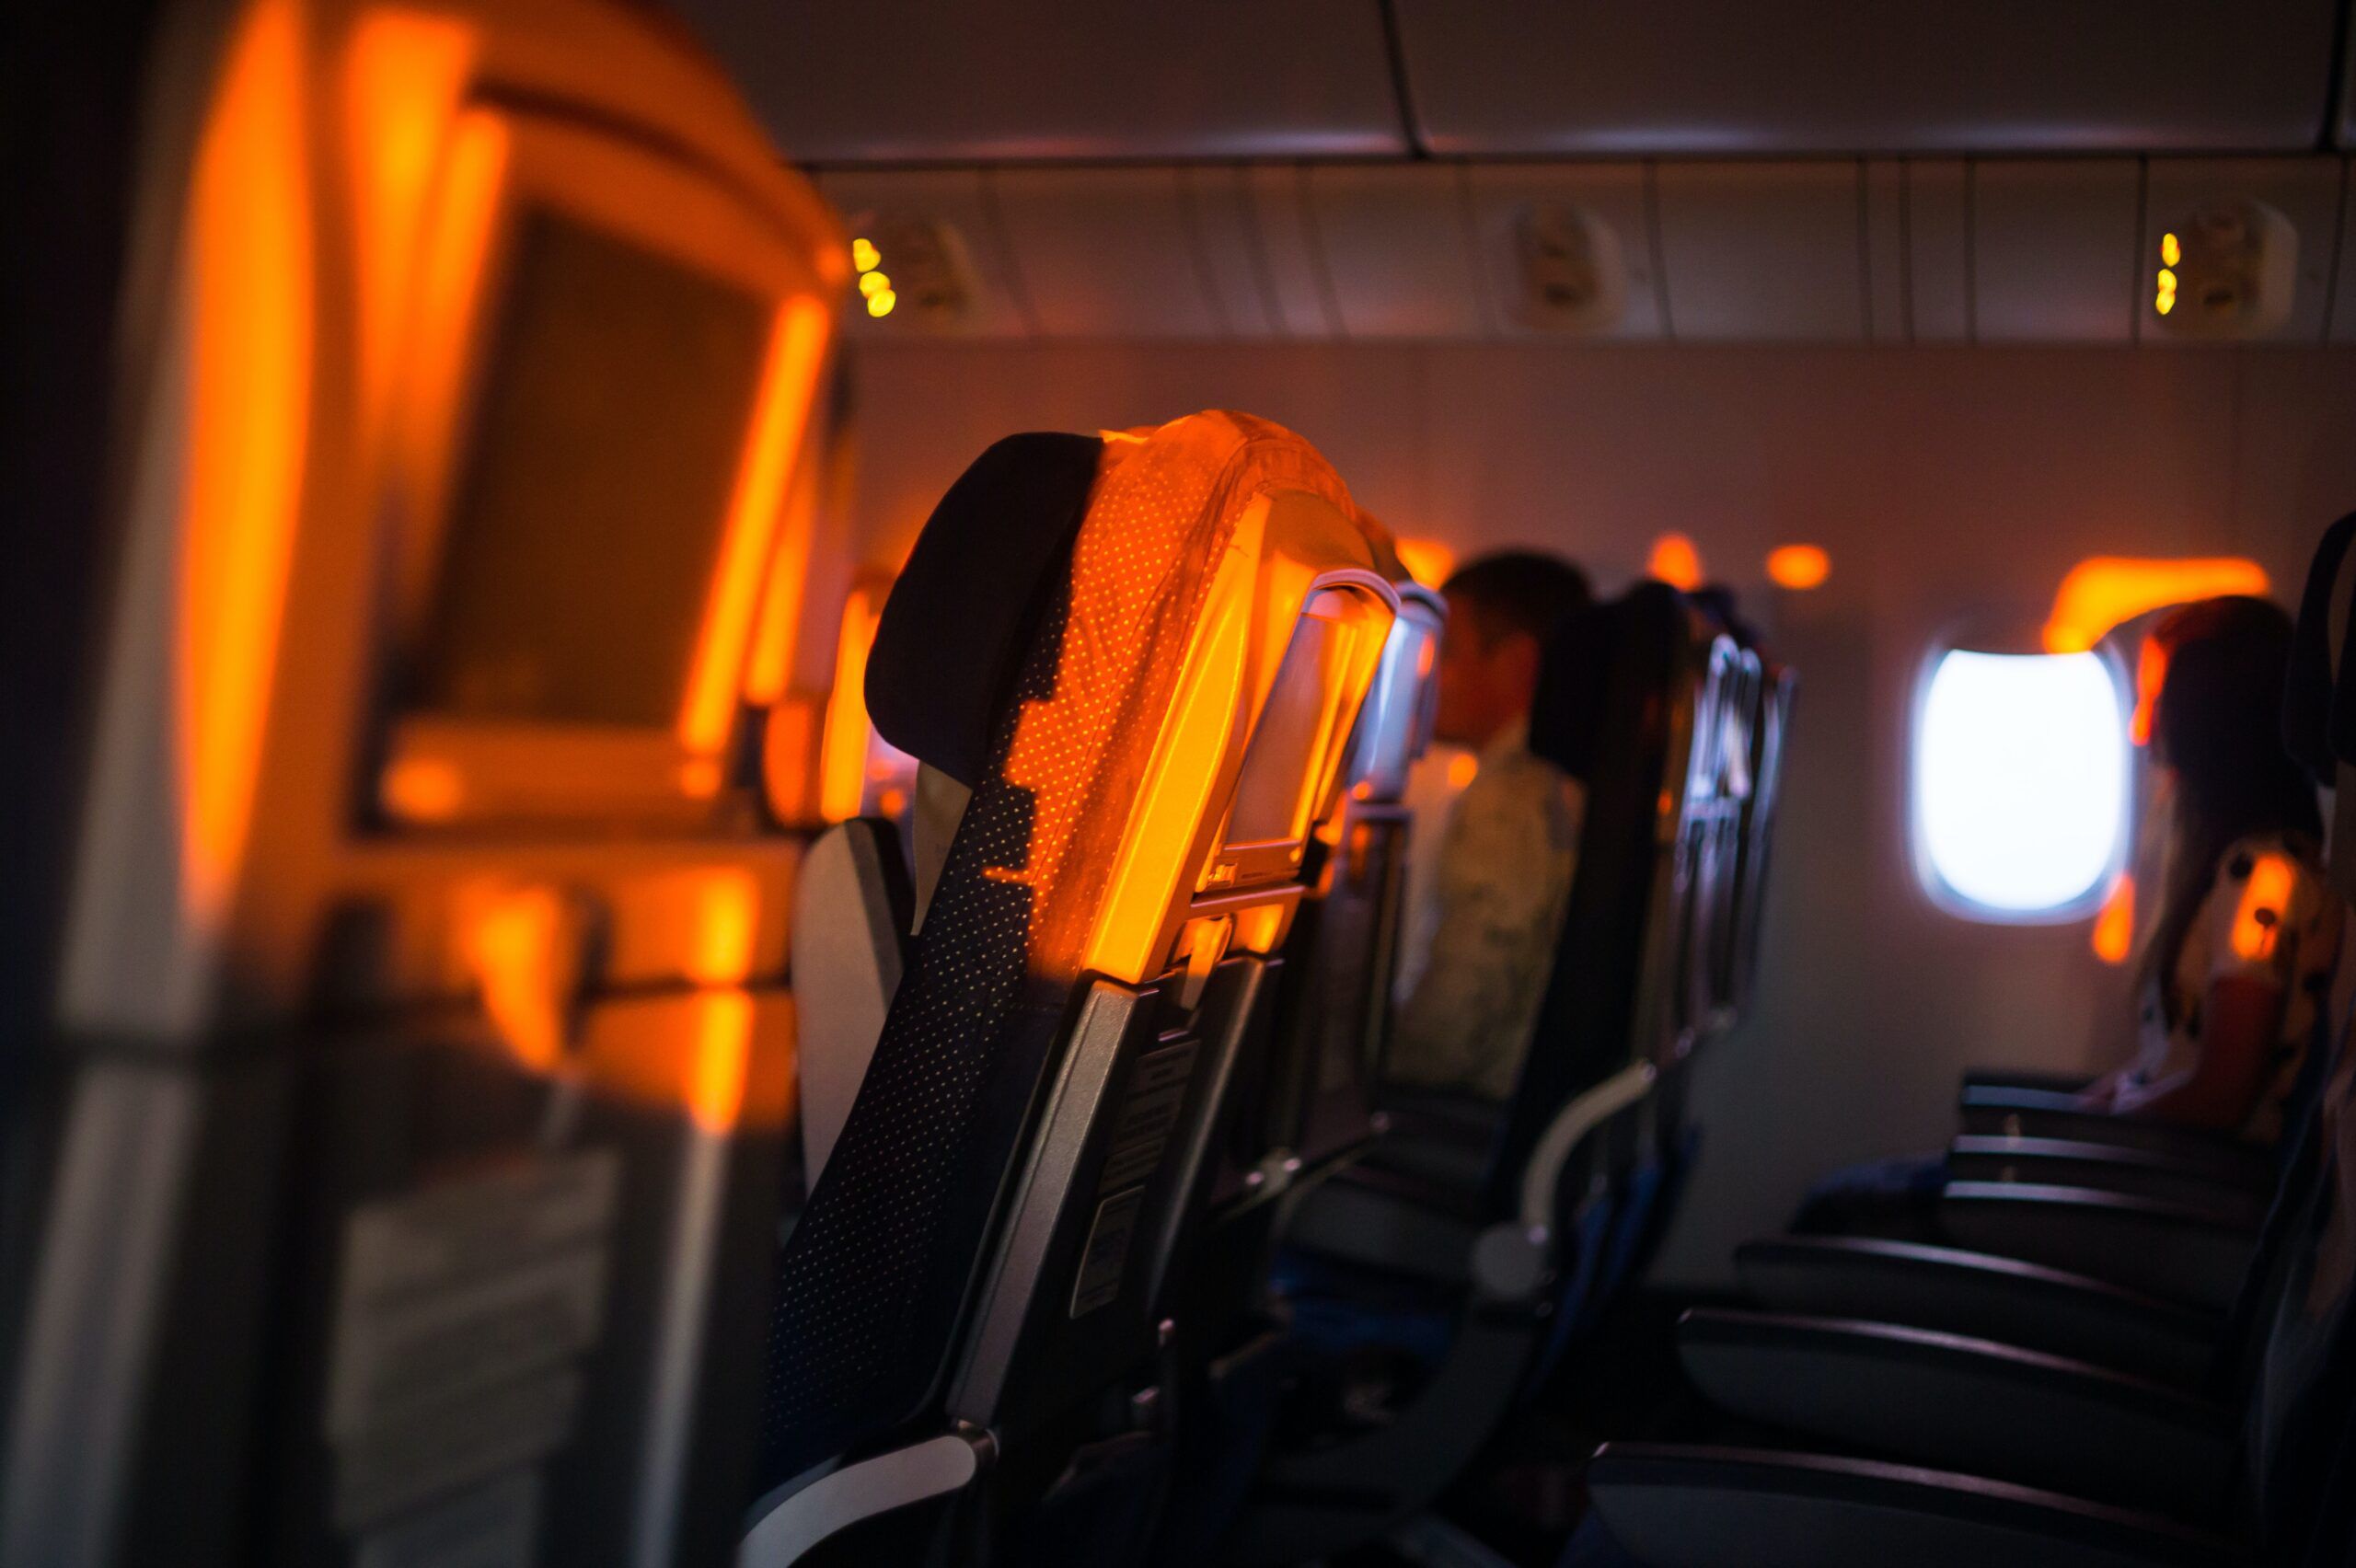 Versäumter Anschluss: Was sind meine Rechte als Fluggast?